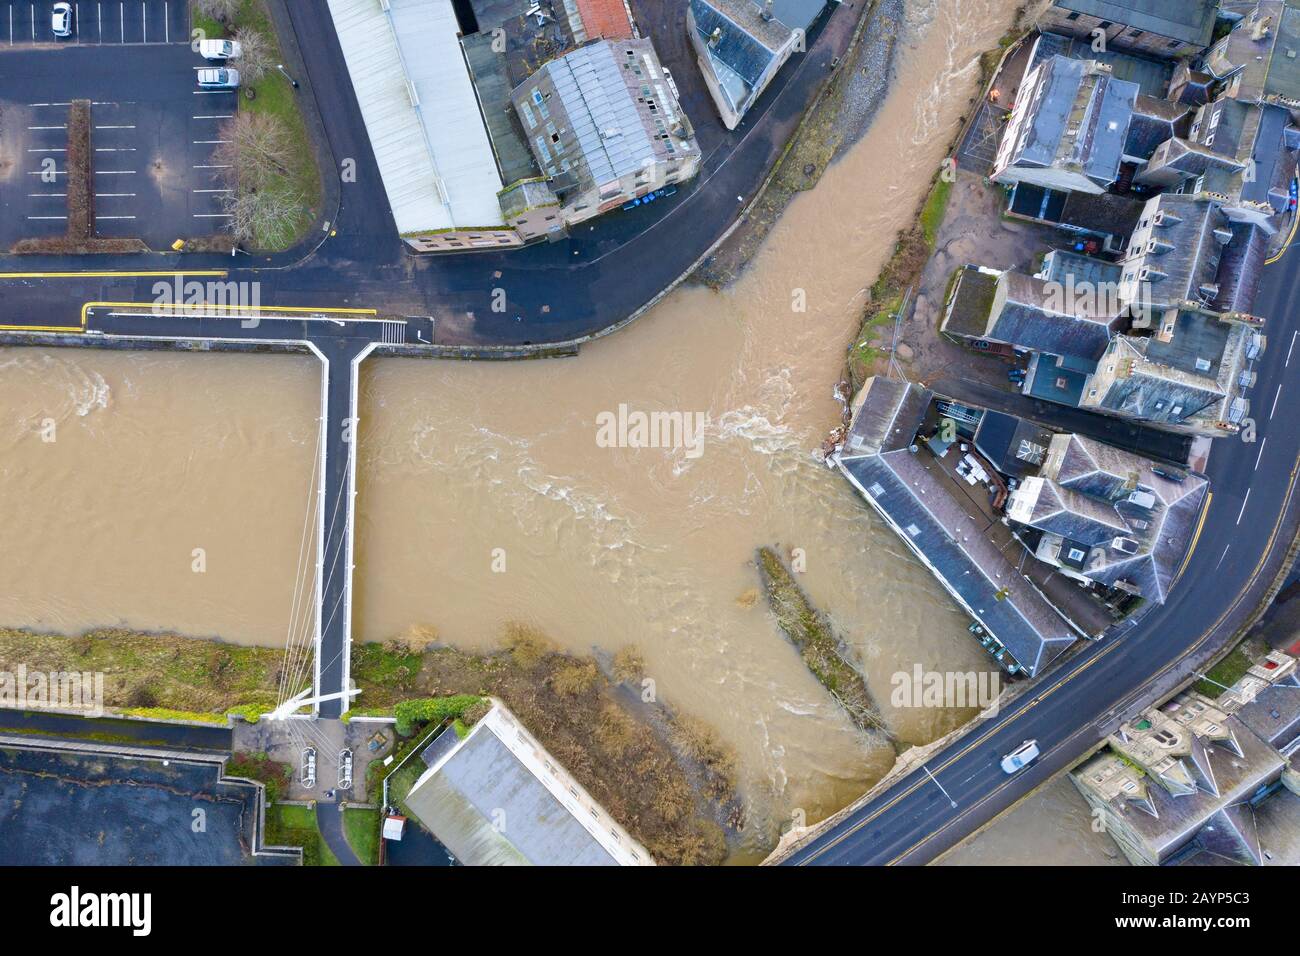 16 Février 2020. Niveaux d'eau élevés après la tempête Dennis dans la rivière Slitrig (en haut) et la rivière Teviot à Hawick dans les frontières écossaises, Écosse, Royaume-Uni Banque D'Images